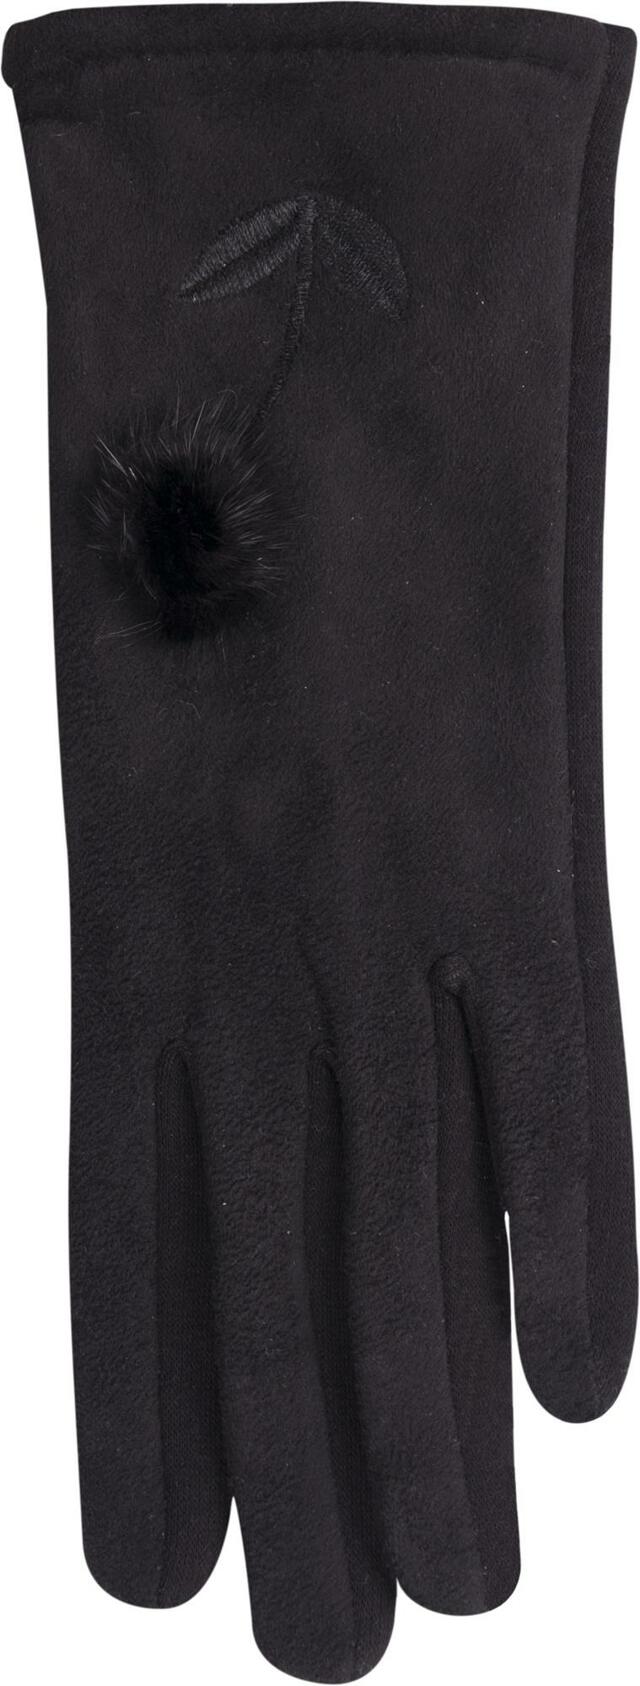 Dámské rukavice R-148 černá - Yoclub - 24 cm - černá